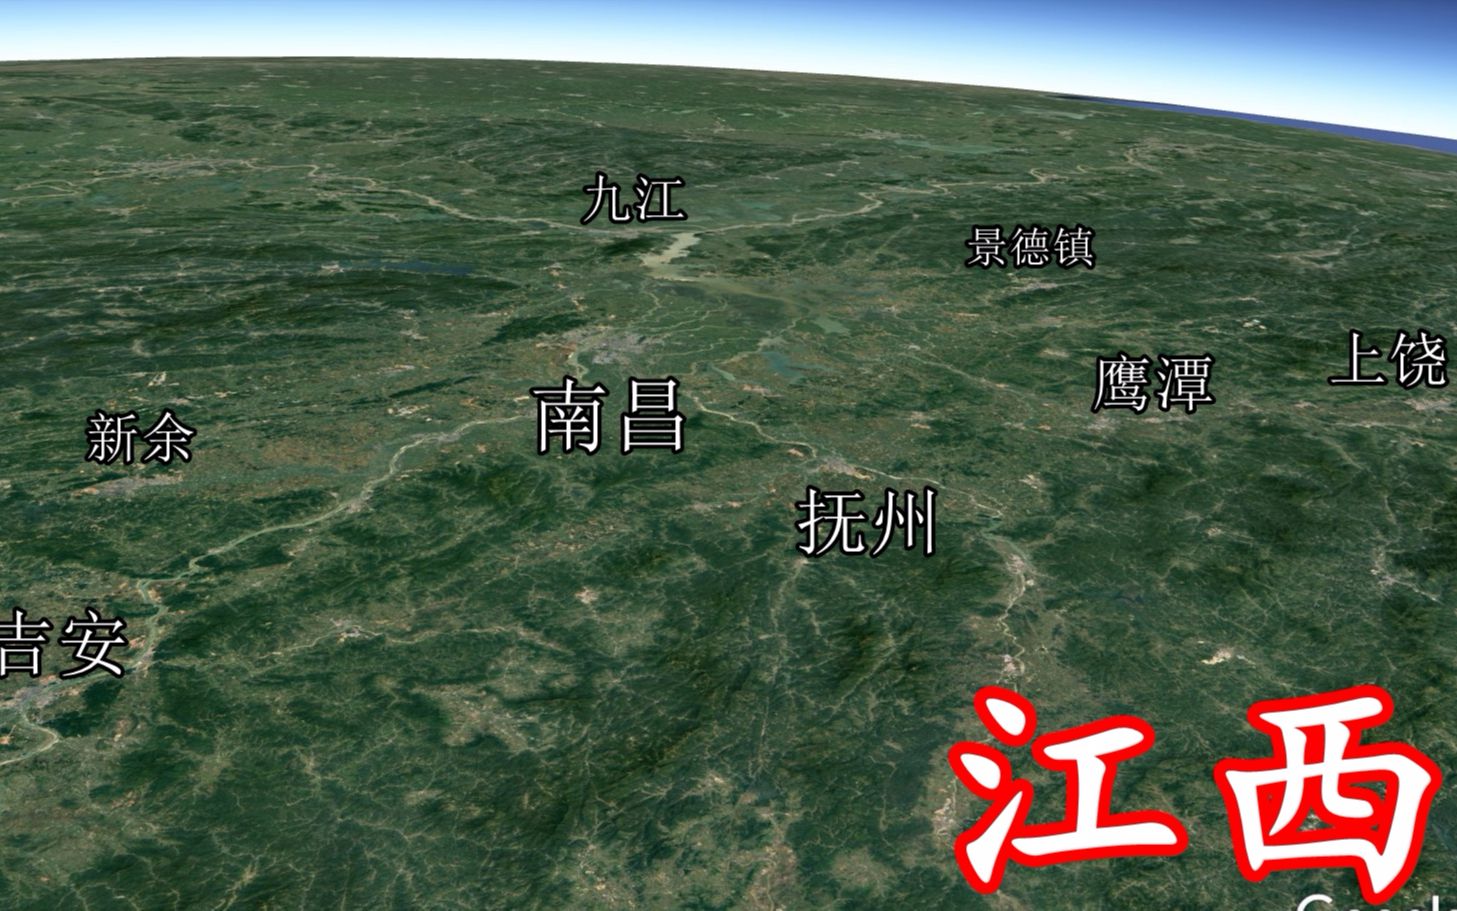 从卫星地图看江西一圈大山围着中间的南昌盆地省会位置就是好